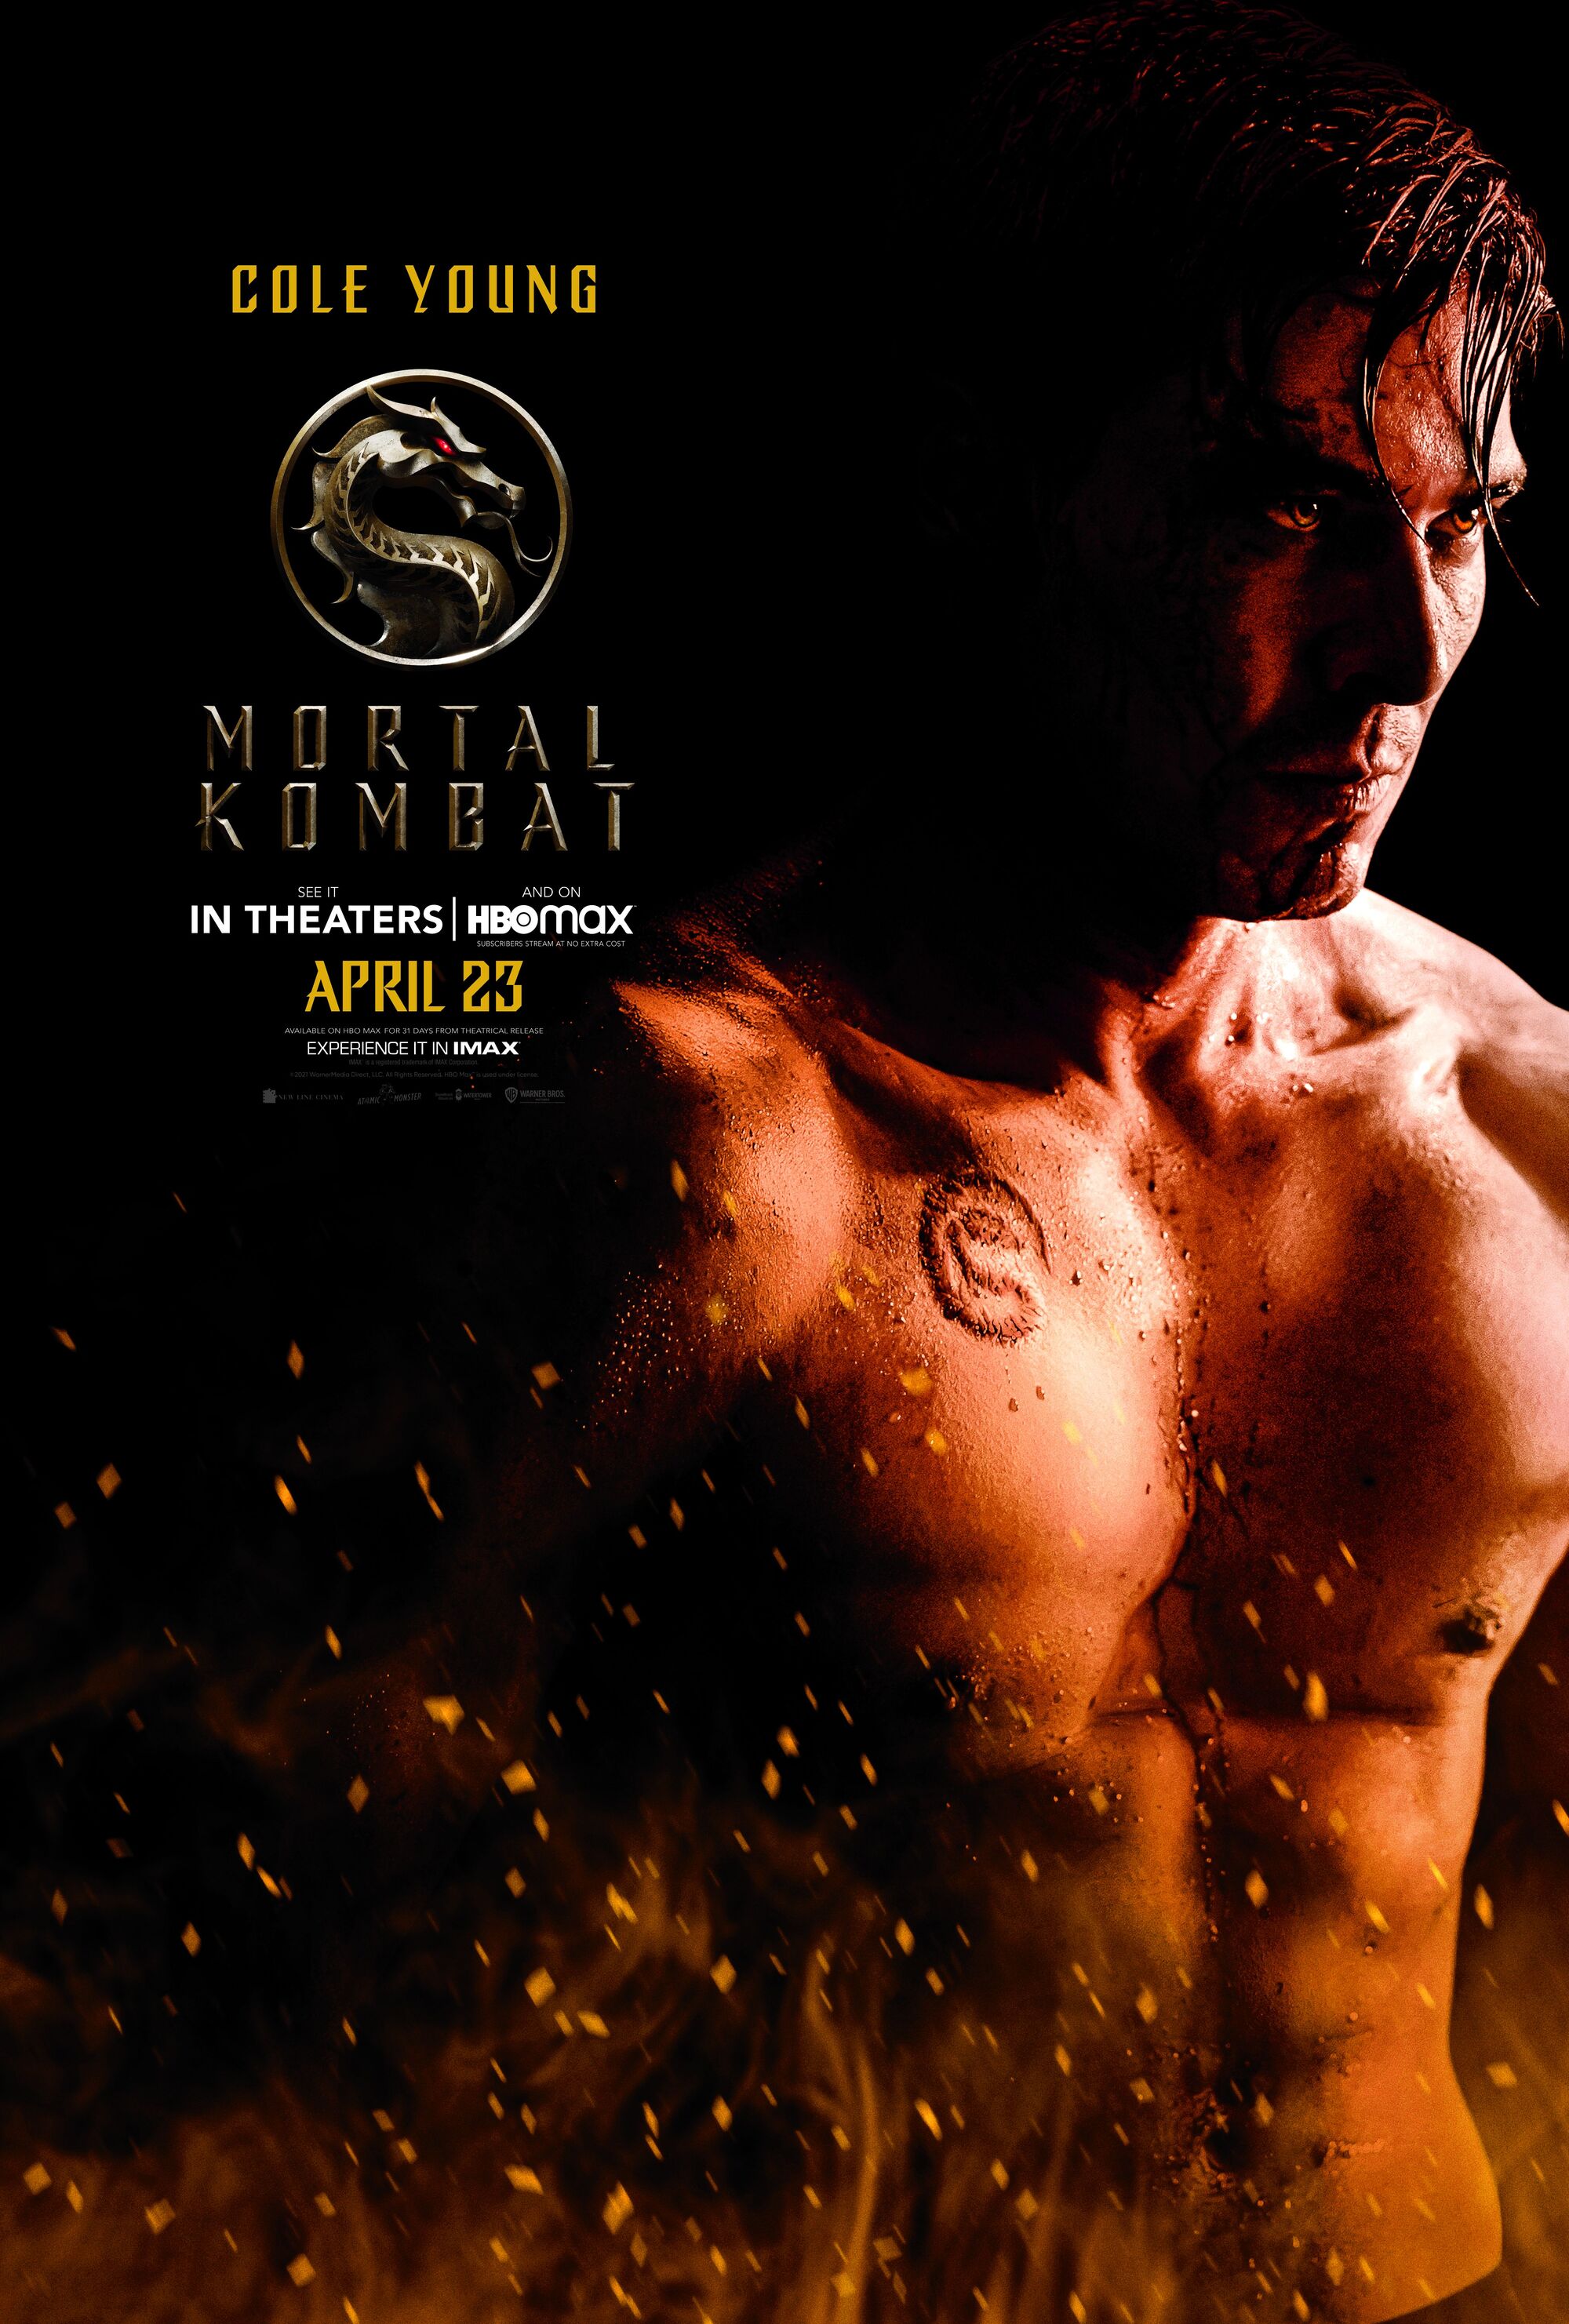 Mortal Kombat (2021 film) - Wikipedia